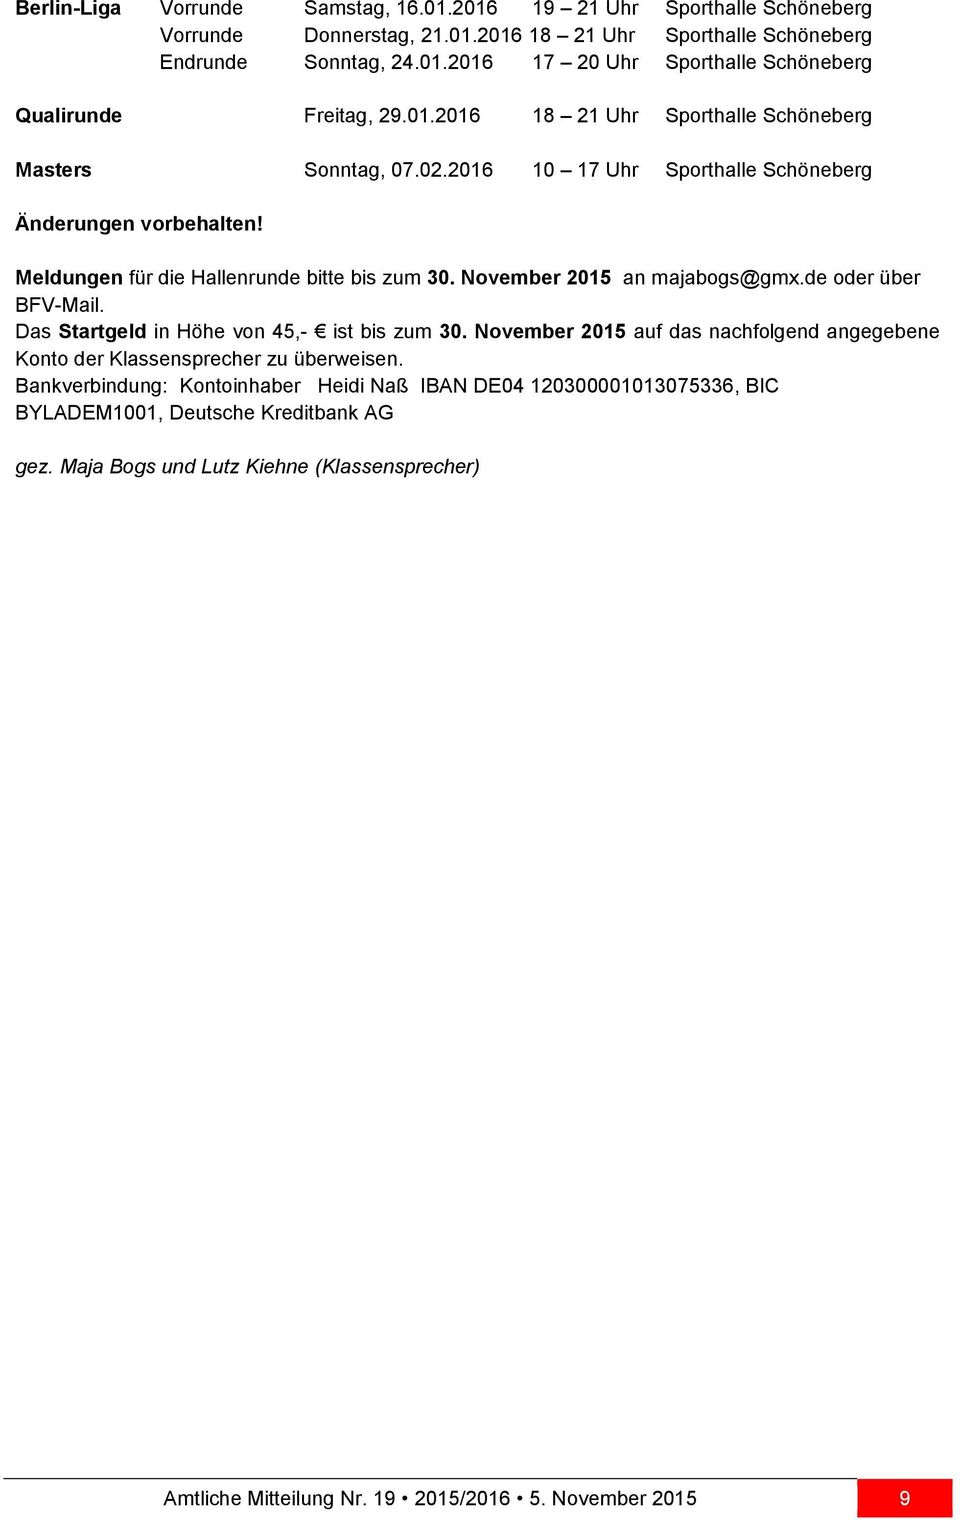 November 2015 an majabogs@gmx.de oder über BFV-Mail. Das Startgeld in Höhe von 45,- ist bis zum 30. November 2015 auf das nachfolgend angegebene Konto der Klassensprecher zu überweisen.